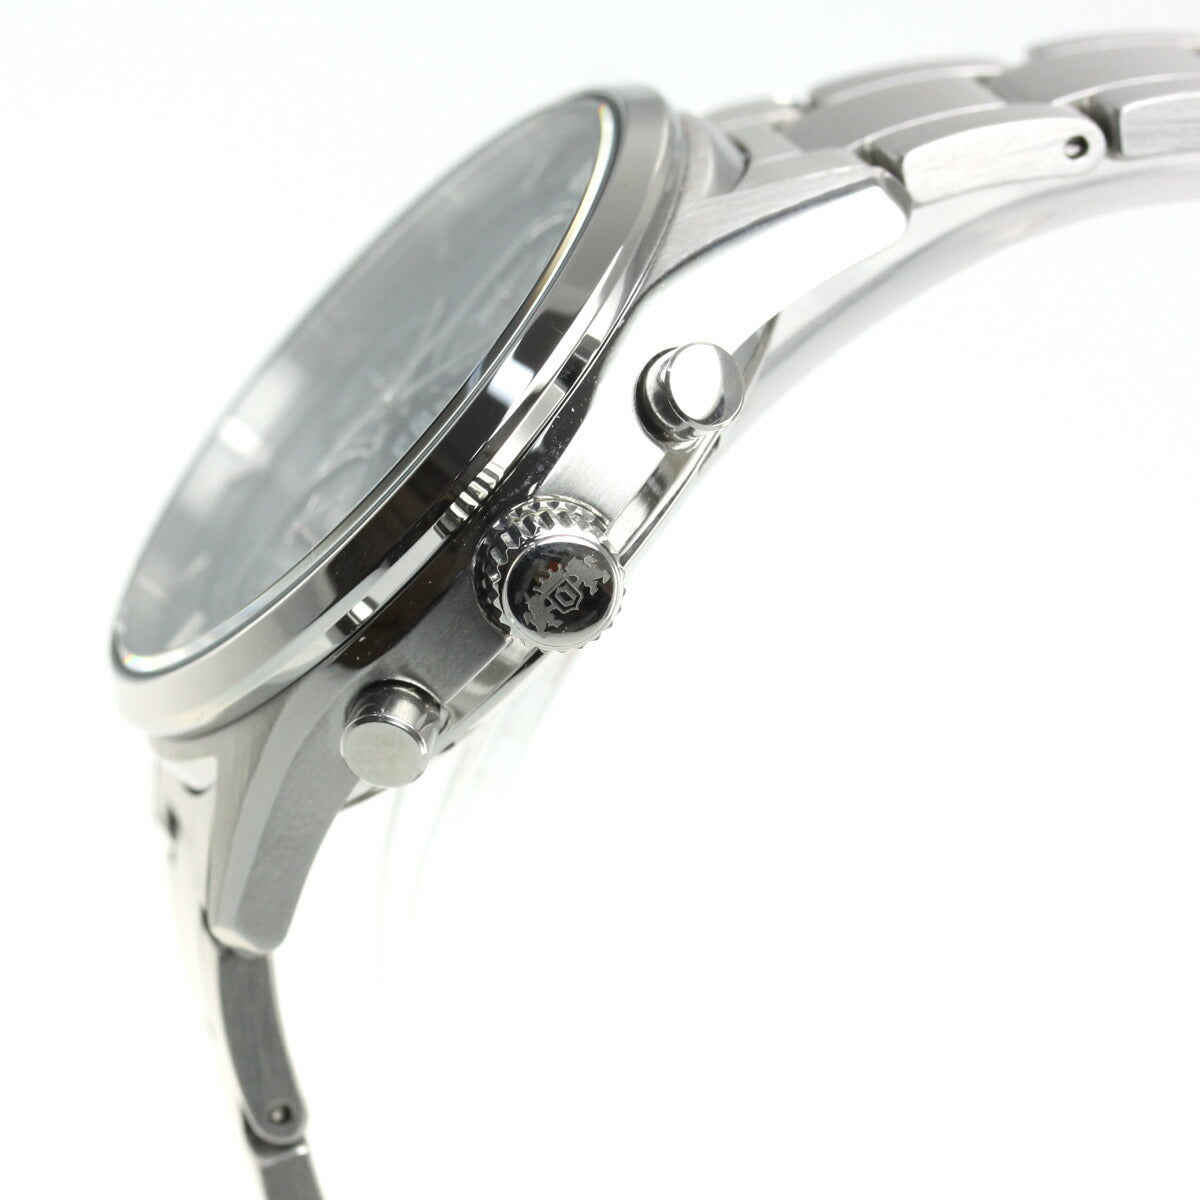 オリエント 腕時計 メンズ ソーラー ORIENT コンテンポラリー CONTEMPORARY クロノグラフ RN-TY0003L